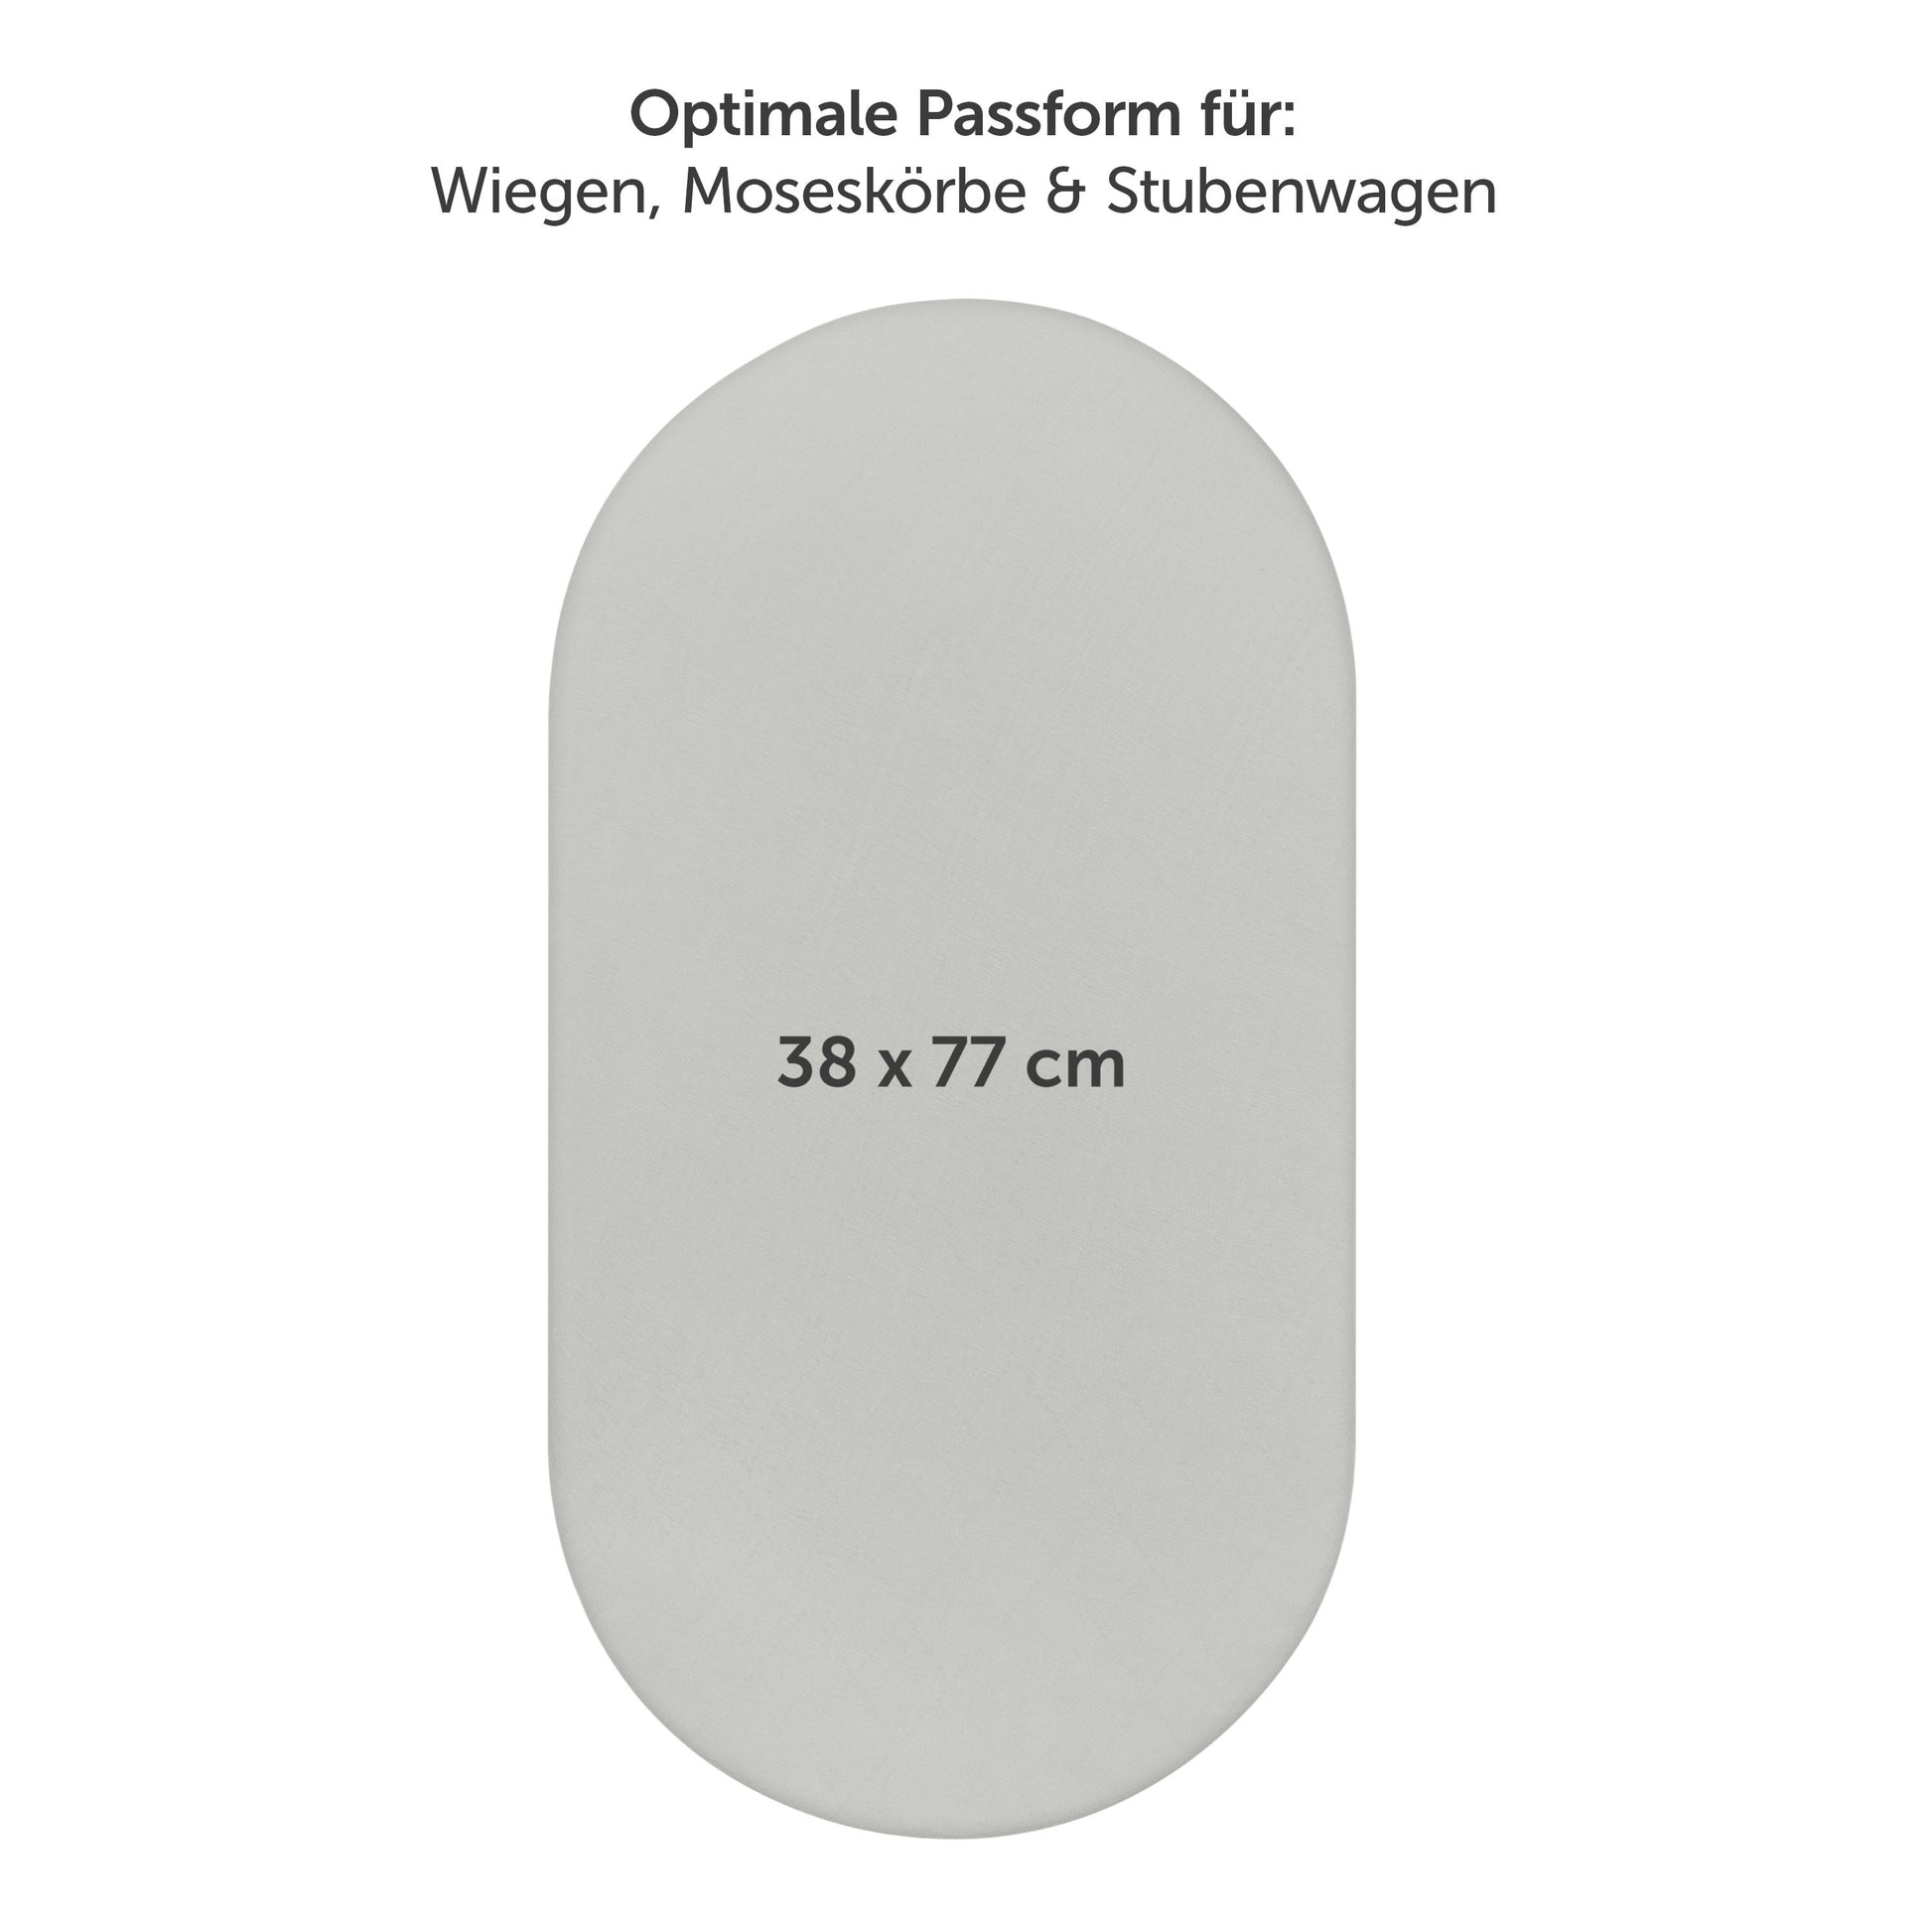 Produktverpackung für Premium Spannbetttücher in grau Farben mit Öko-Tex Standard 100 Siegel.